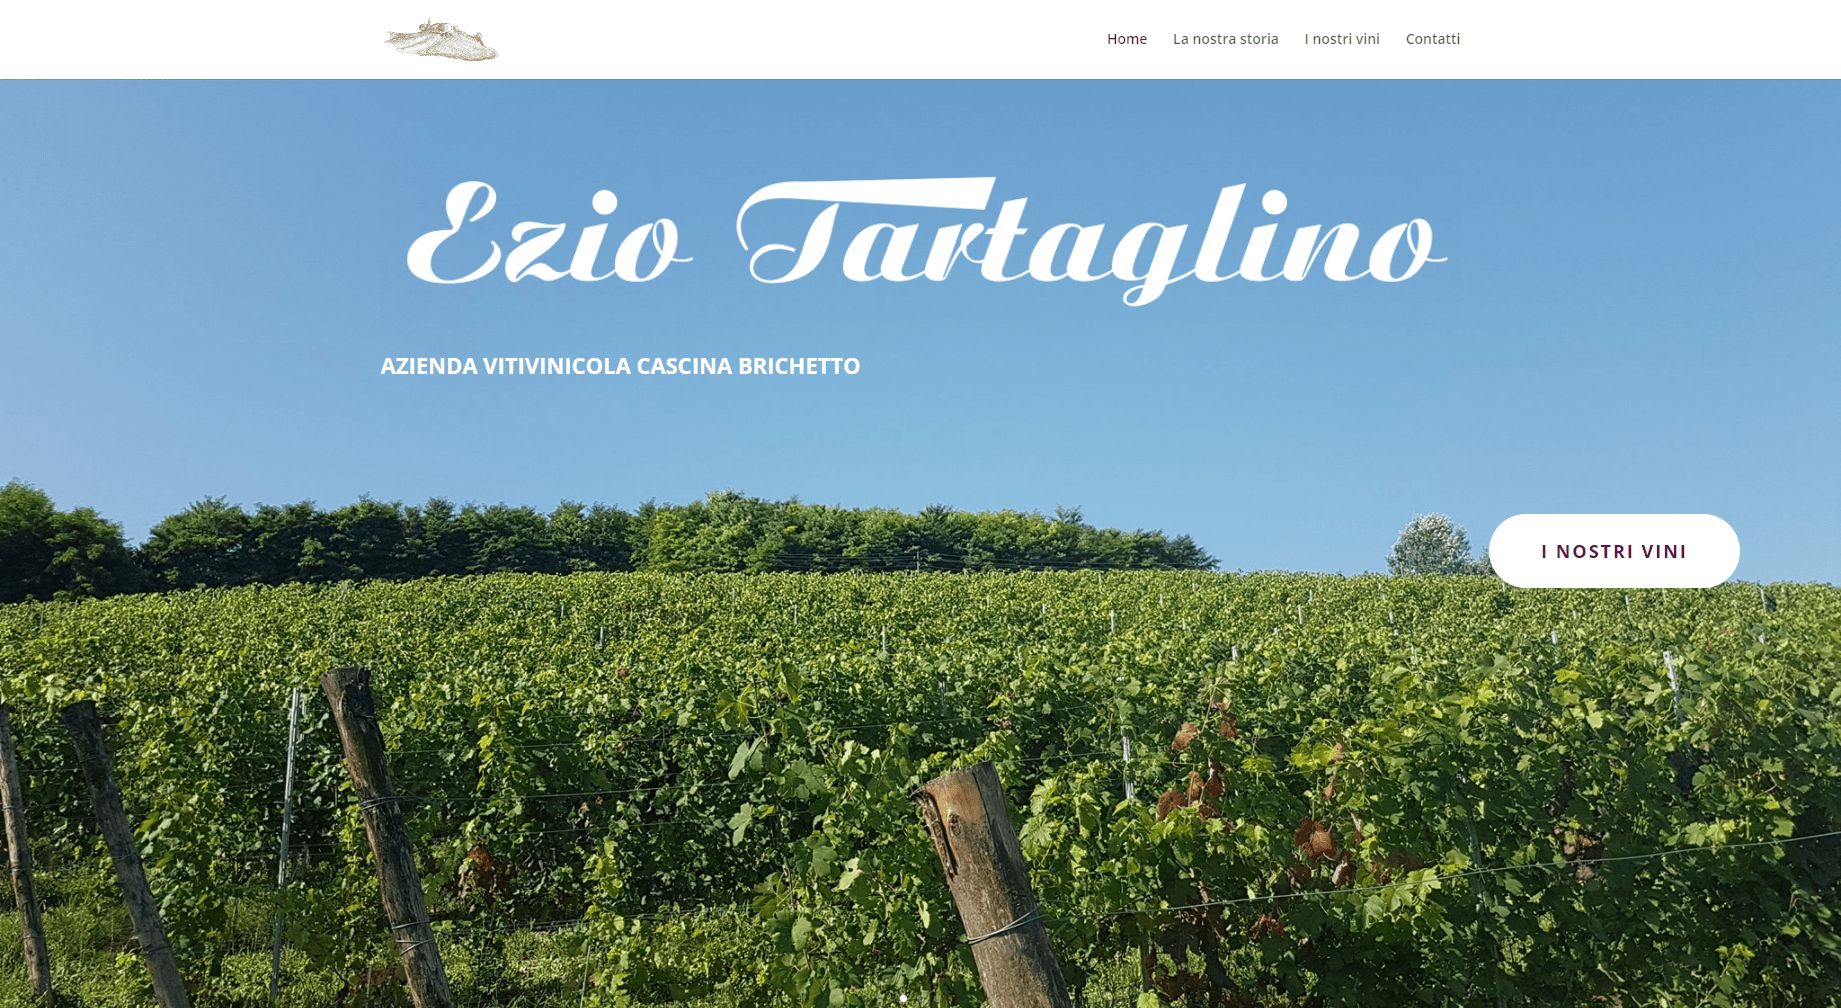 ScreenShot del sito web dell'azienda vitivinicola di Asti CascinaBrichetto visto da computer